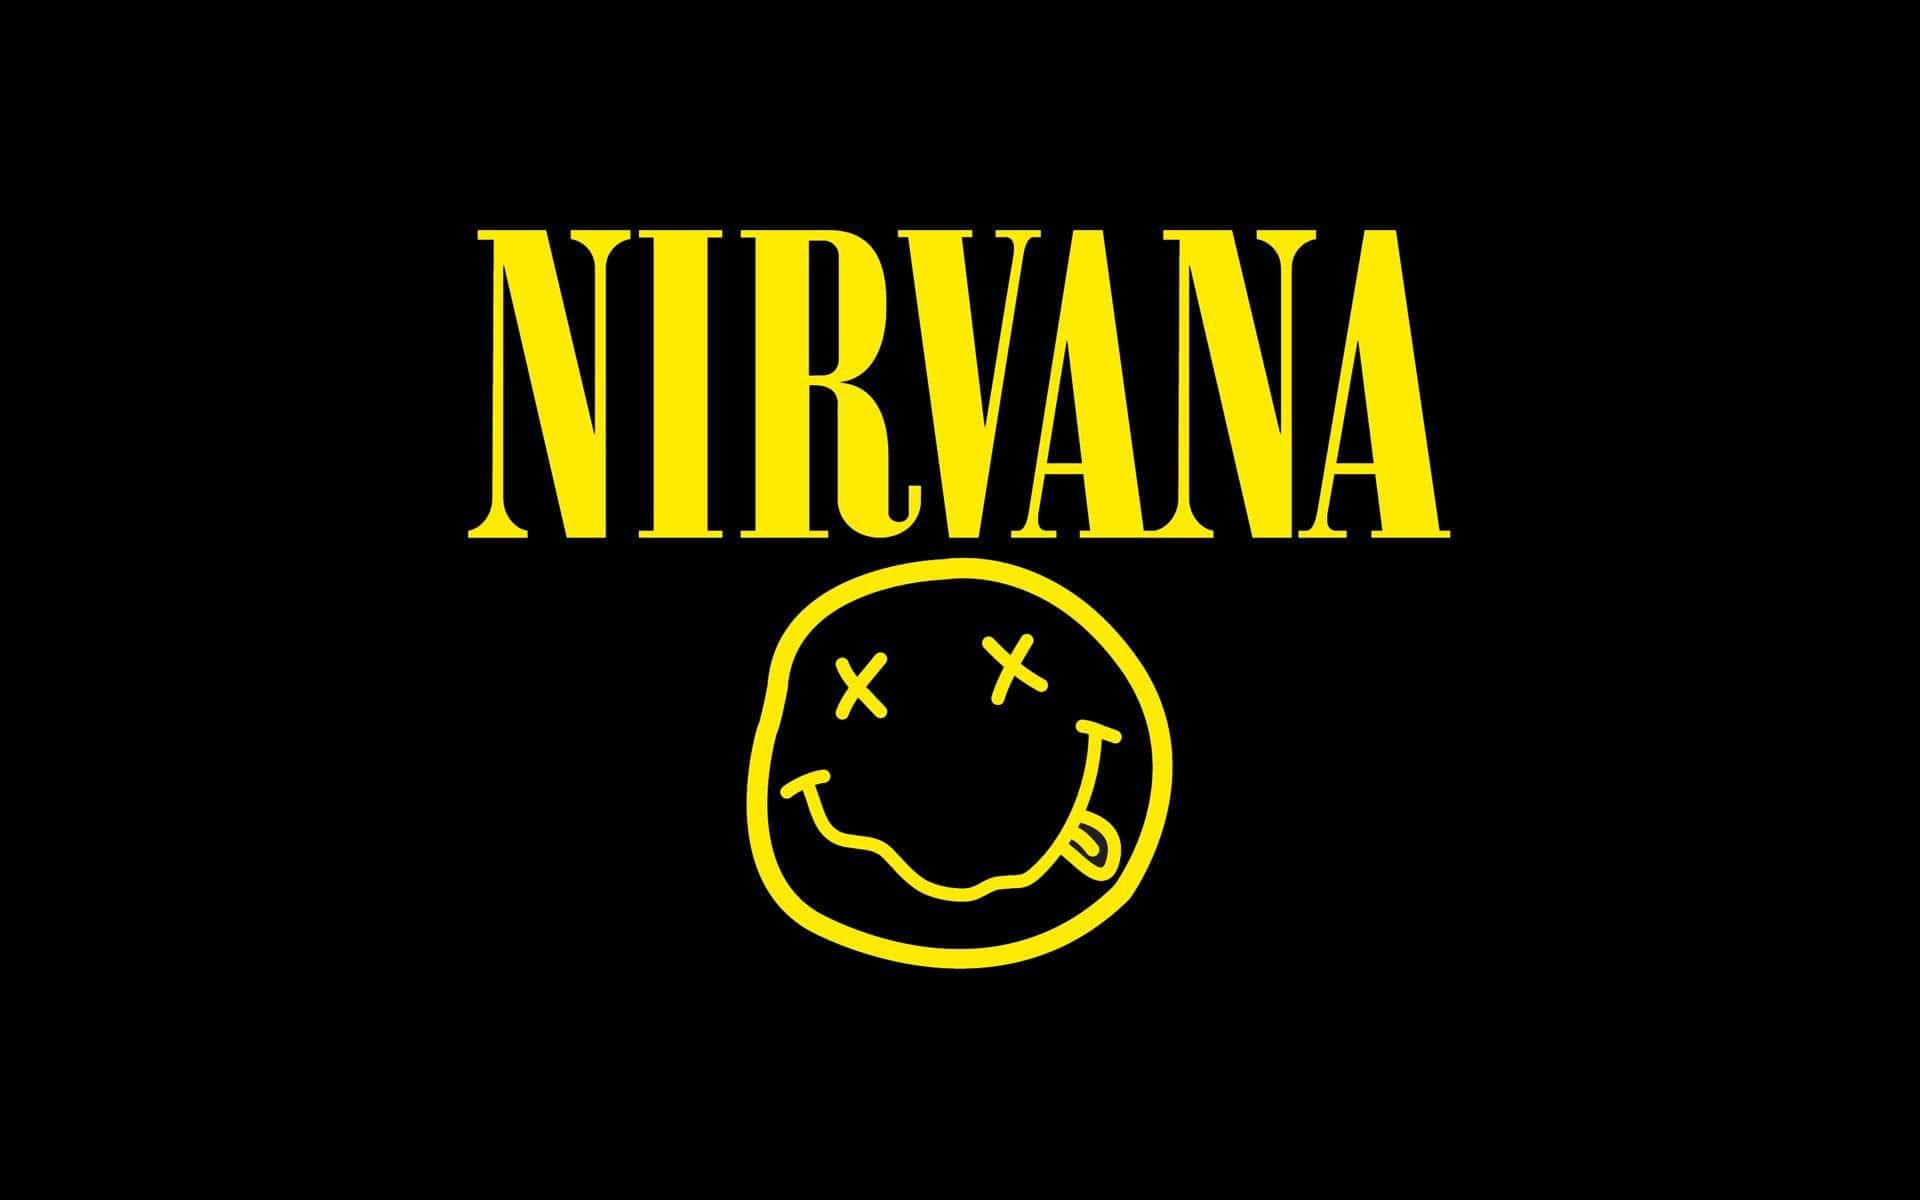 Iconoicónico De La Banda Nirvana En Blanco Y Negro.